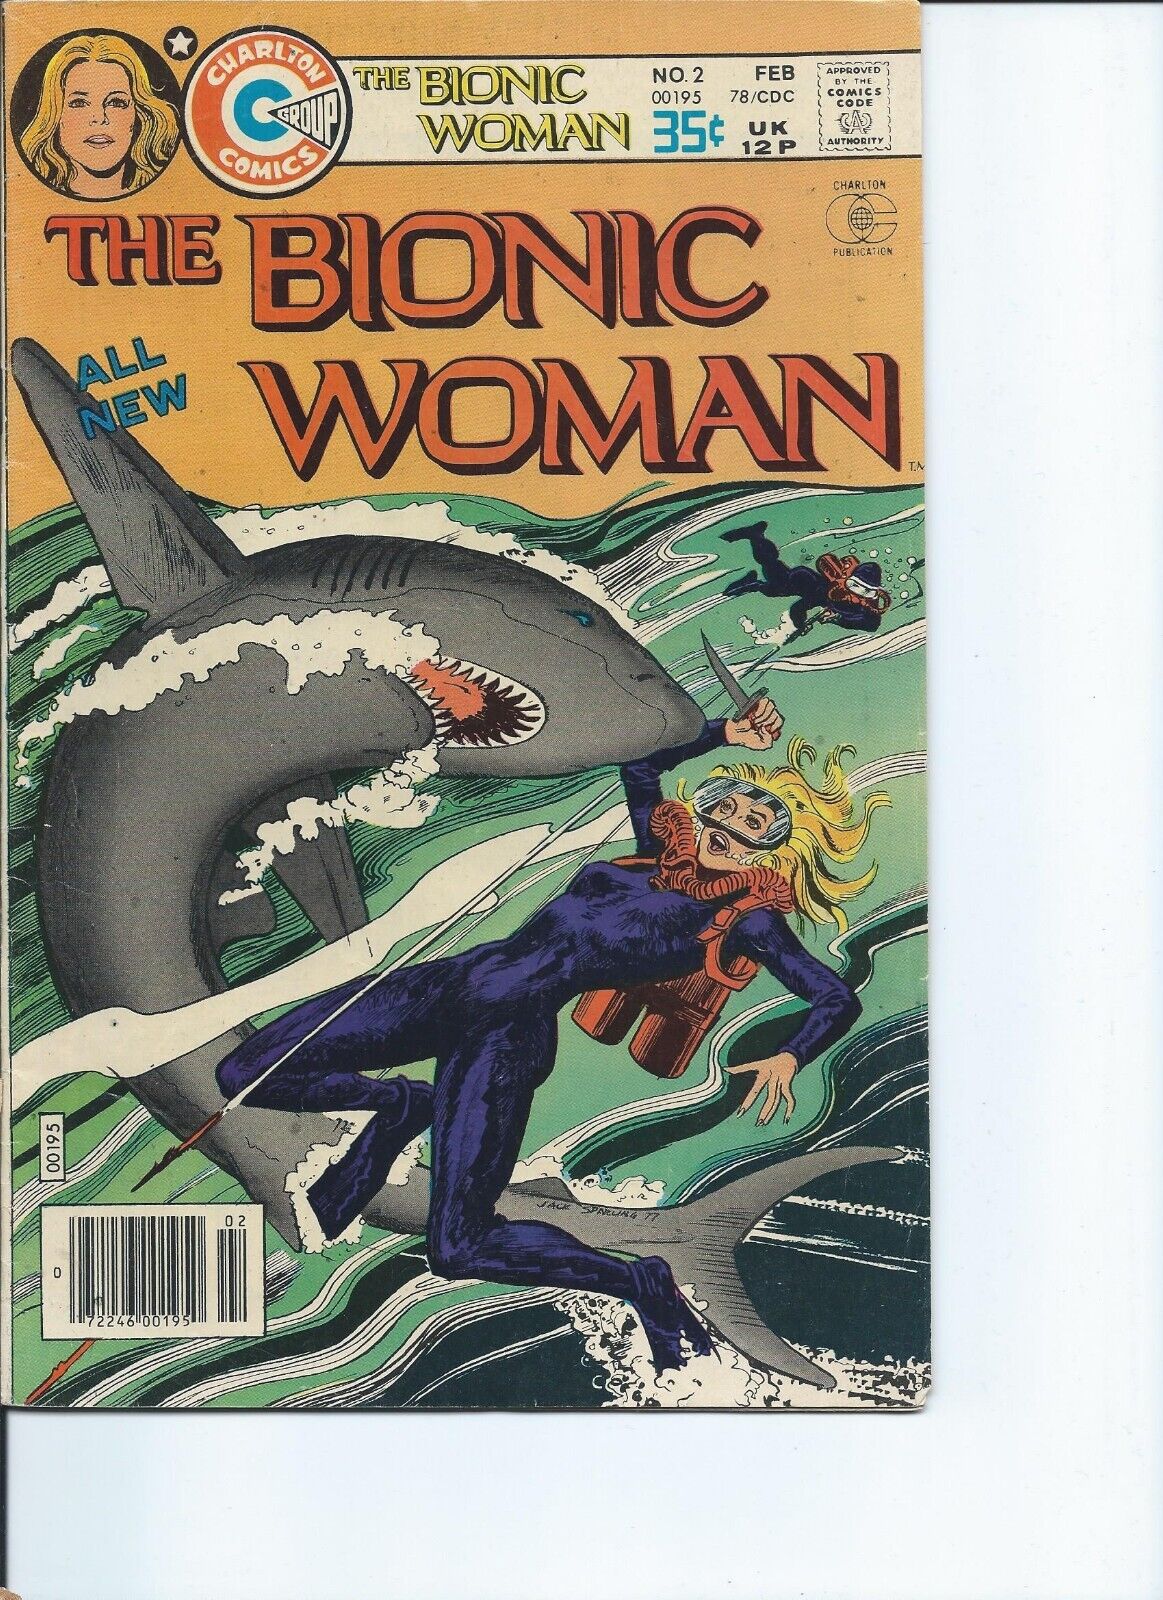 RARE AND UNIQUE BRONZE AGE COMICS! THE BIONIC WOMAN NO. 2 (1978) IN FINE COND.